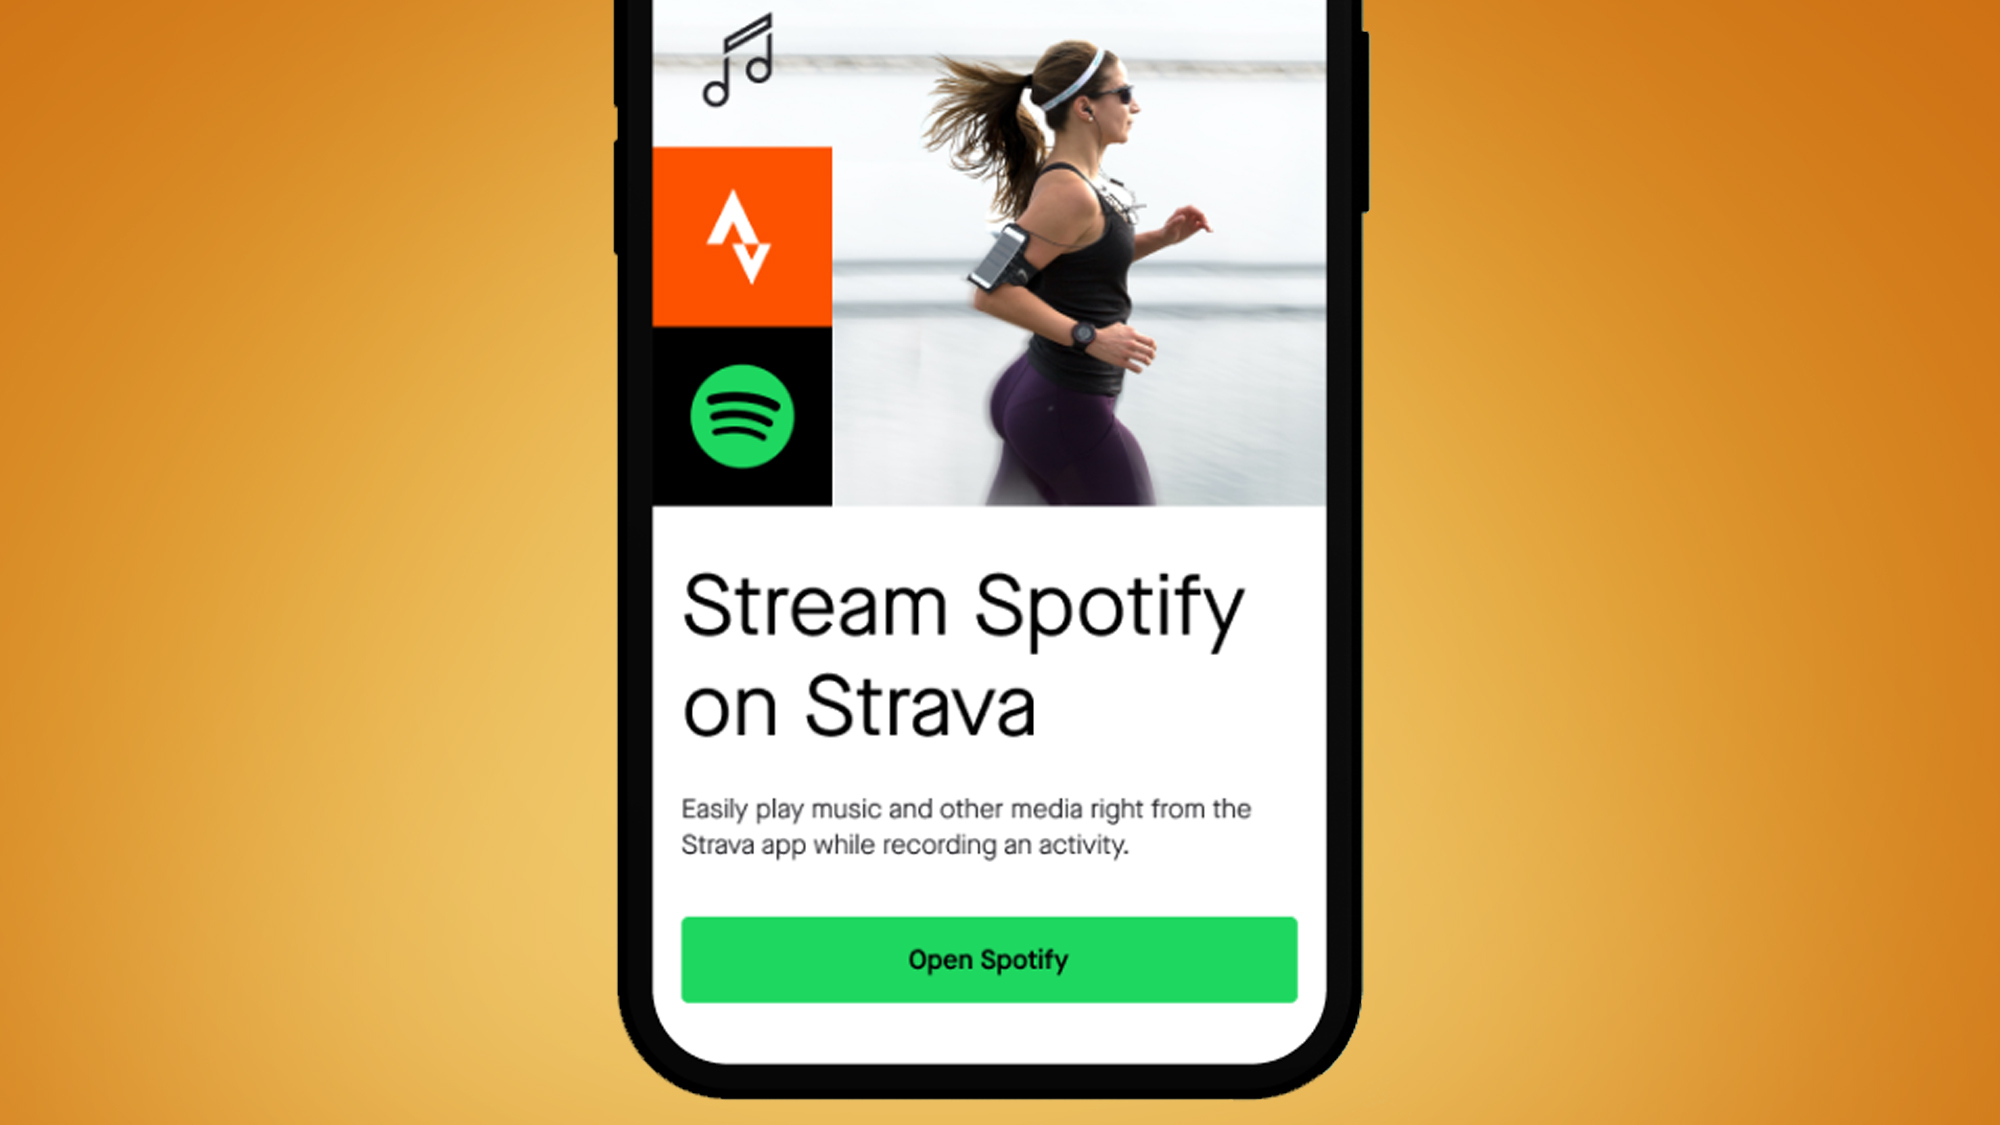 Una pantalla de teléfono sobre un fondo naranja que muestra la integración de Strava y Spotify